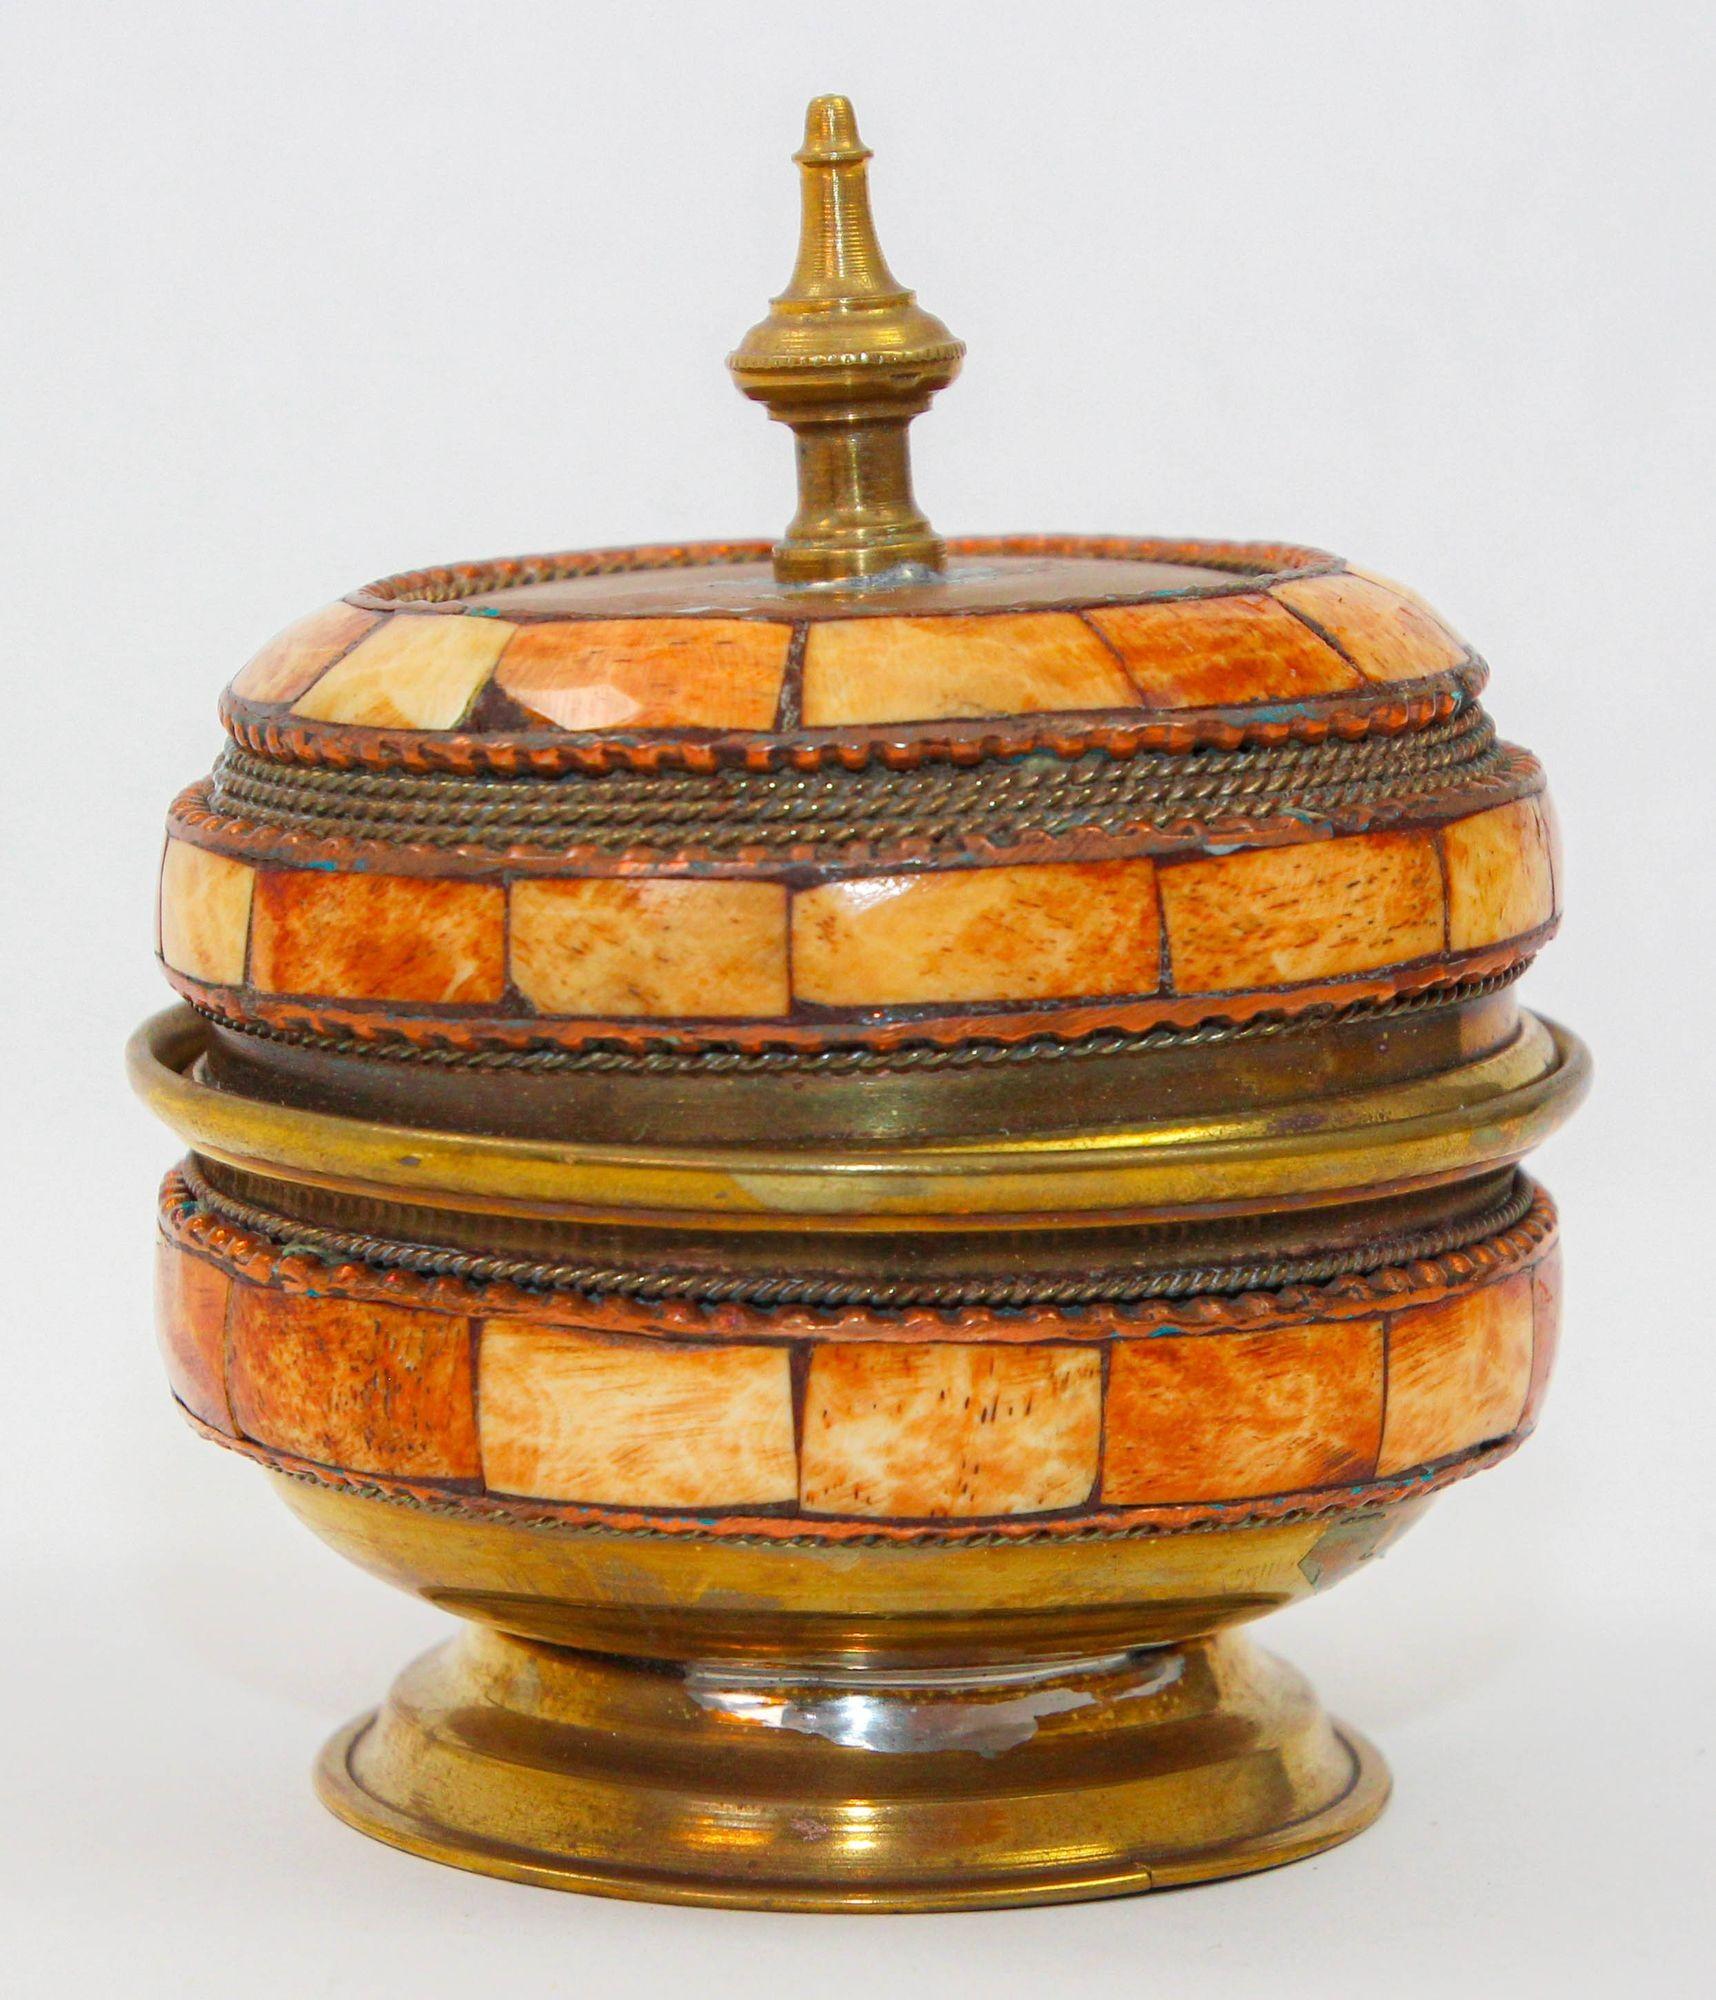 Boîte à pied marocaine vintage, fabriquée à la main en laiton avec une superposition d'os sculptés en couleur ambre orange et blanc.
Boîte décorative marocaine en laiton vintage avec couvercle amovible.
Fabriqué à la main à Marrakech au Maroc, vers